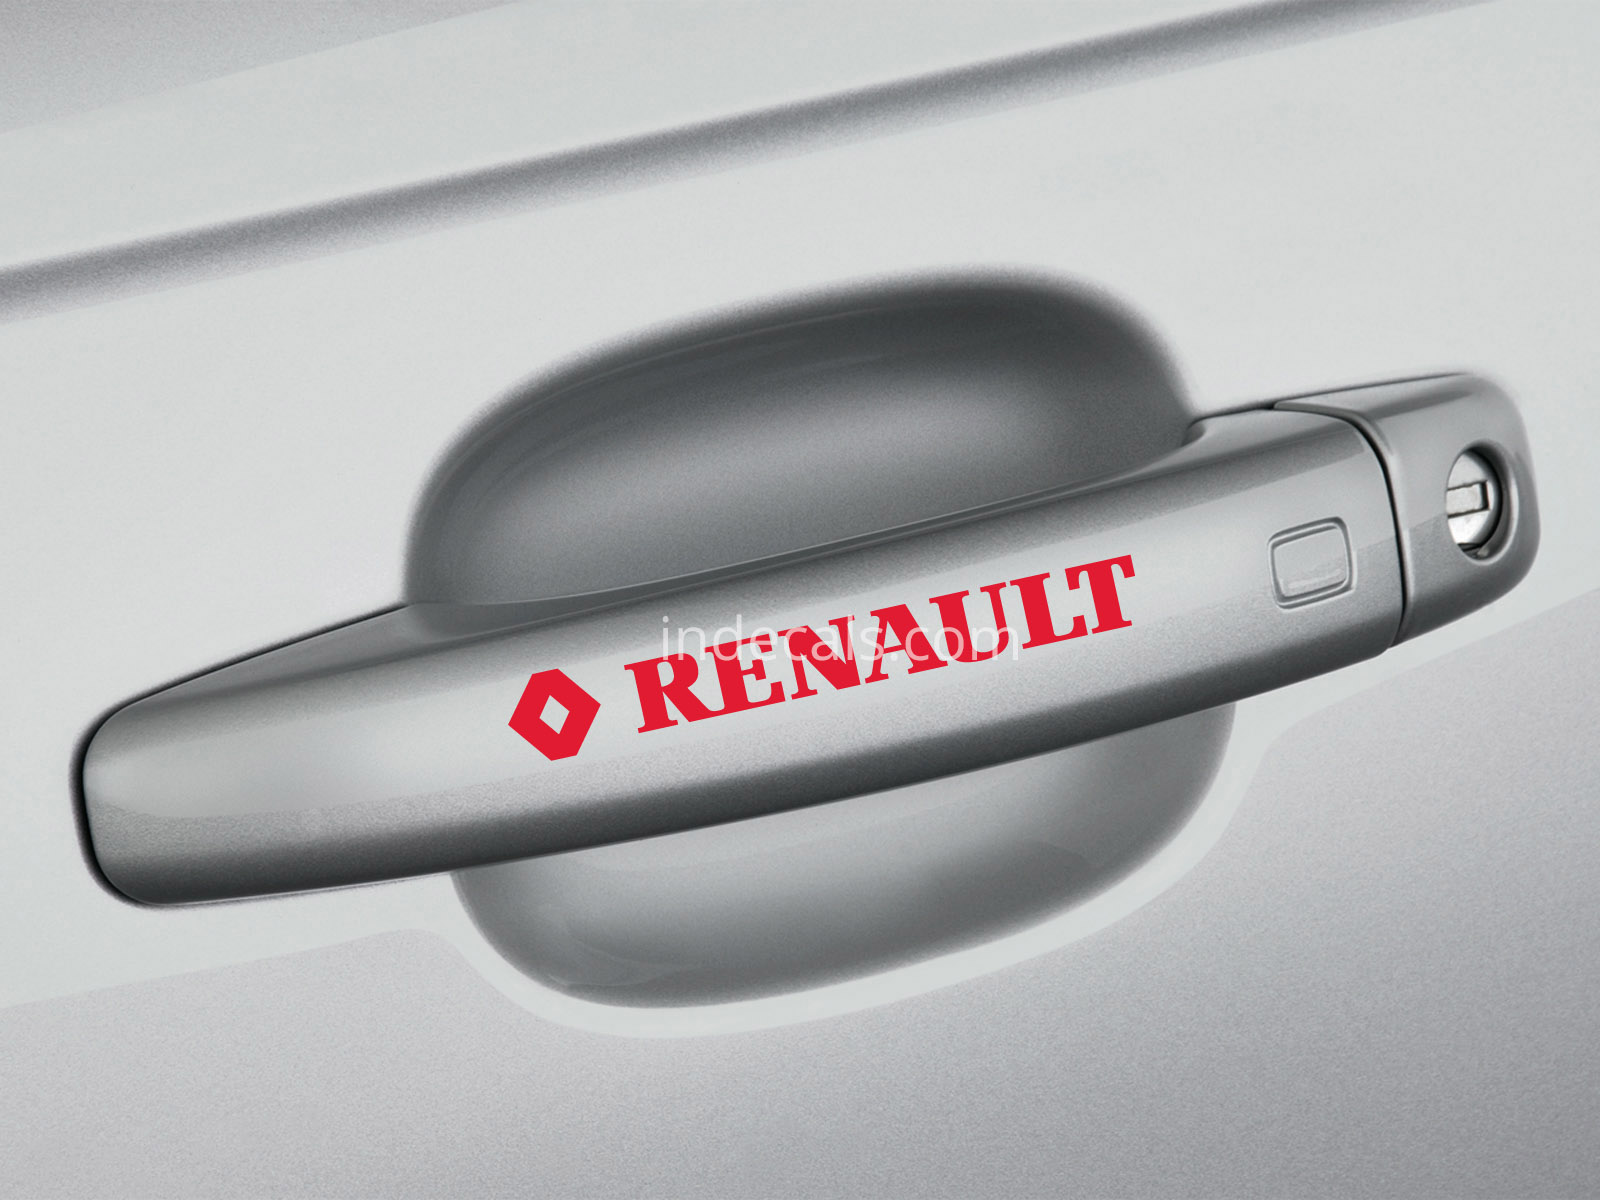 6 x Renault Stickers for Door Handles - Red